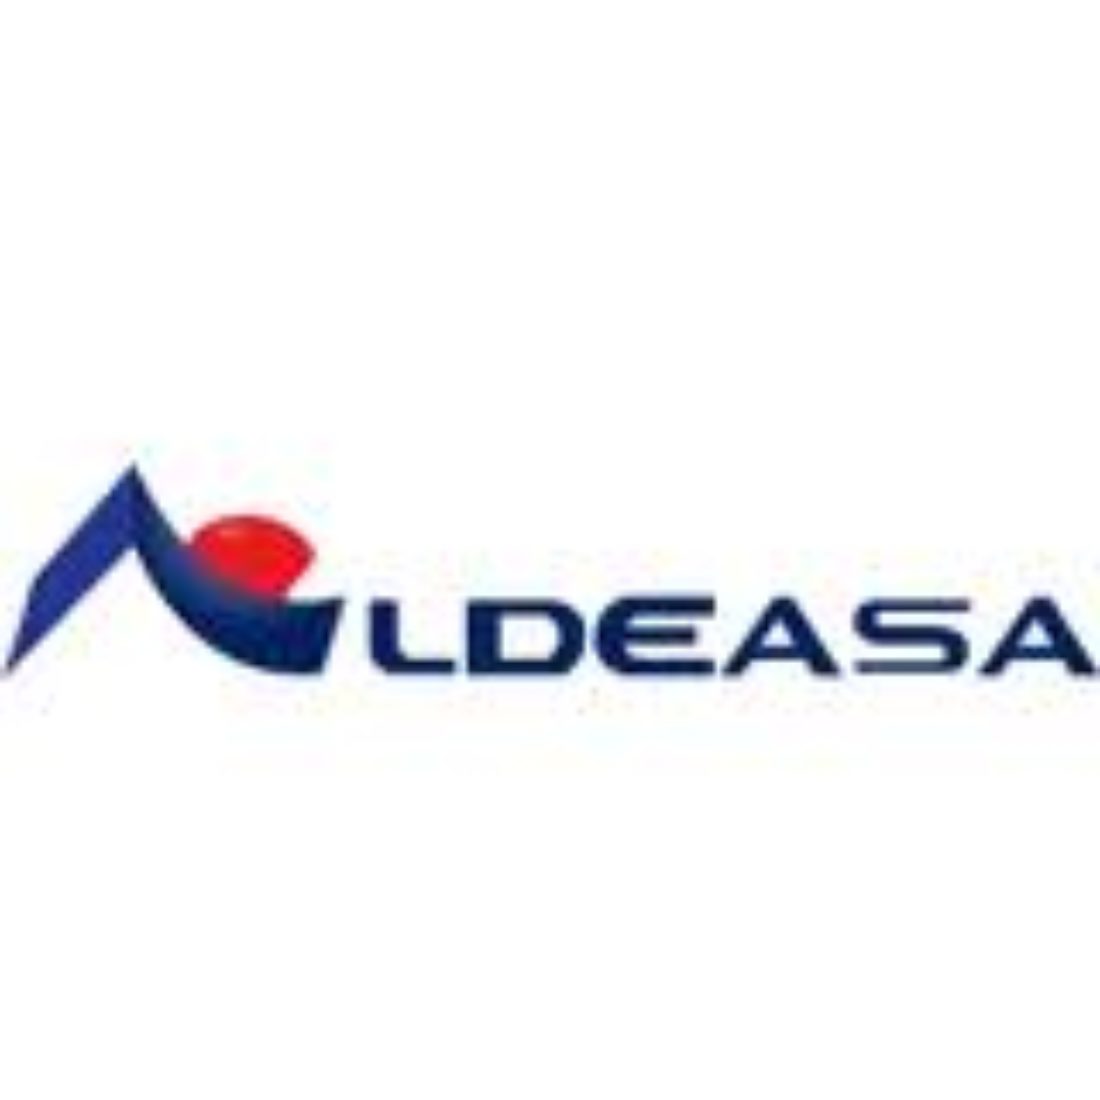 Concentracion contra los despedidos en ALDEASA (World Duty Free Group)